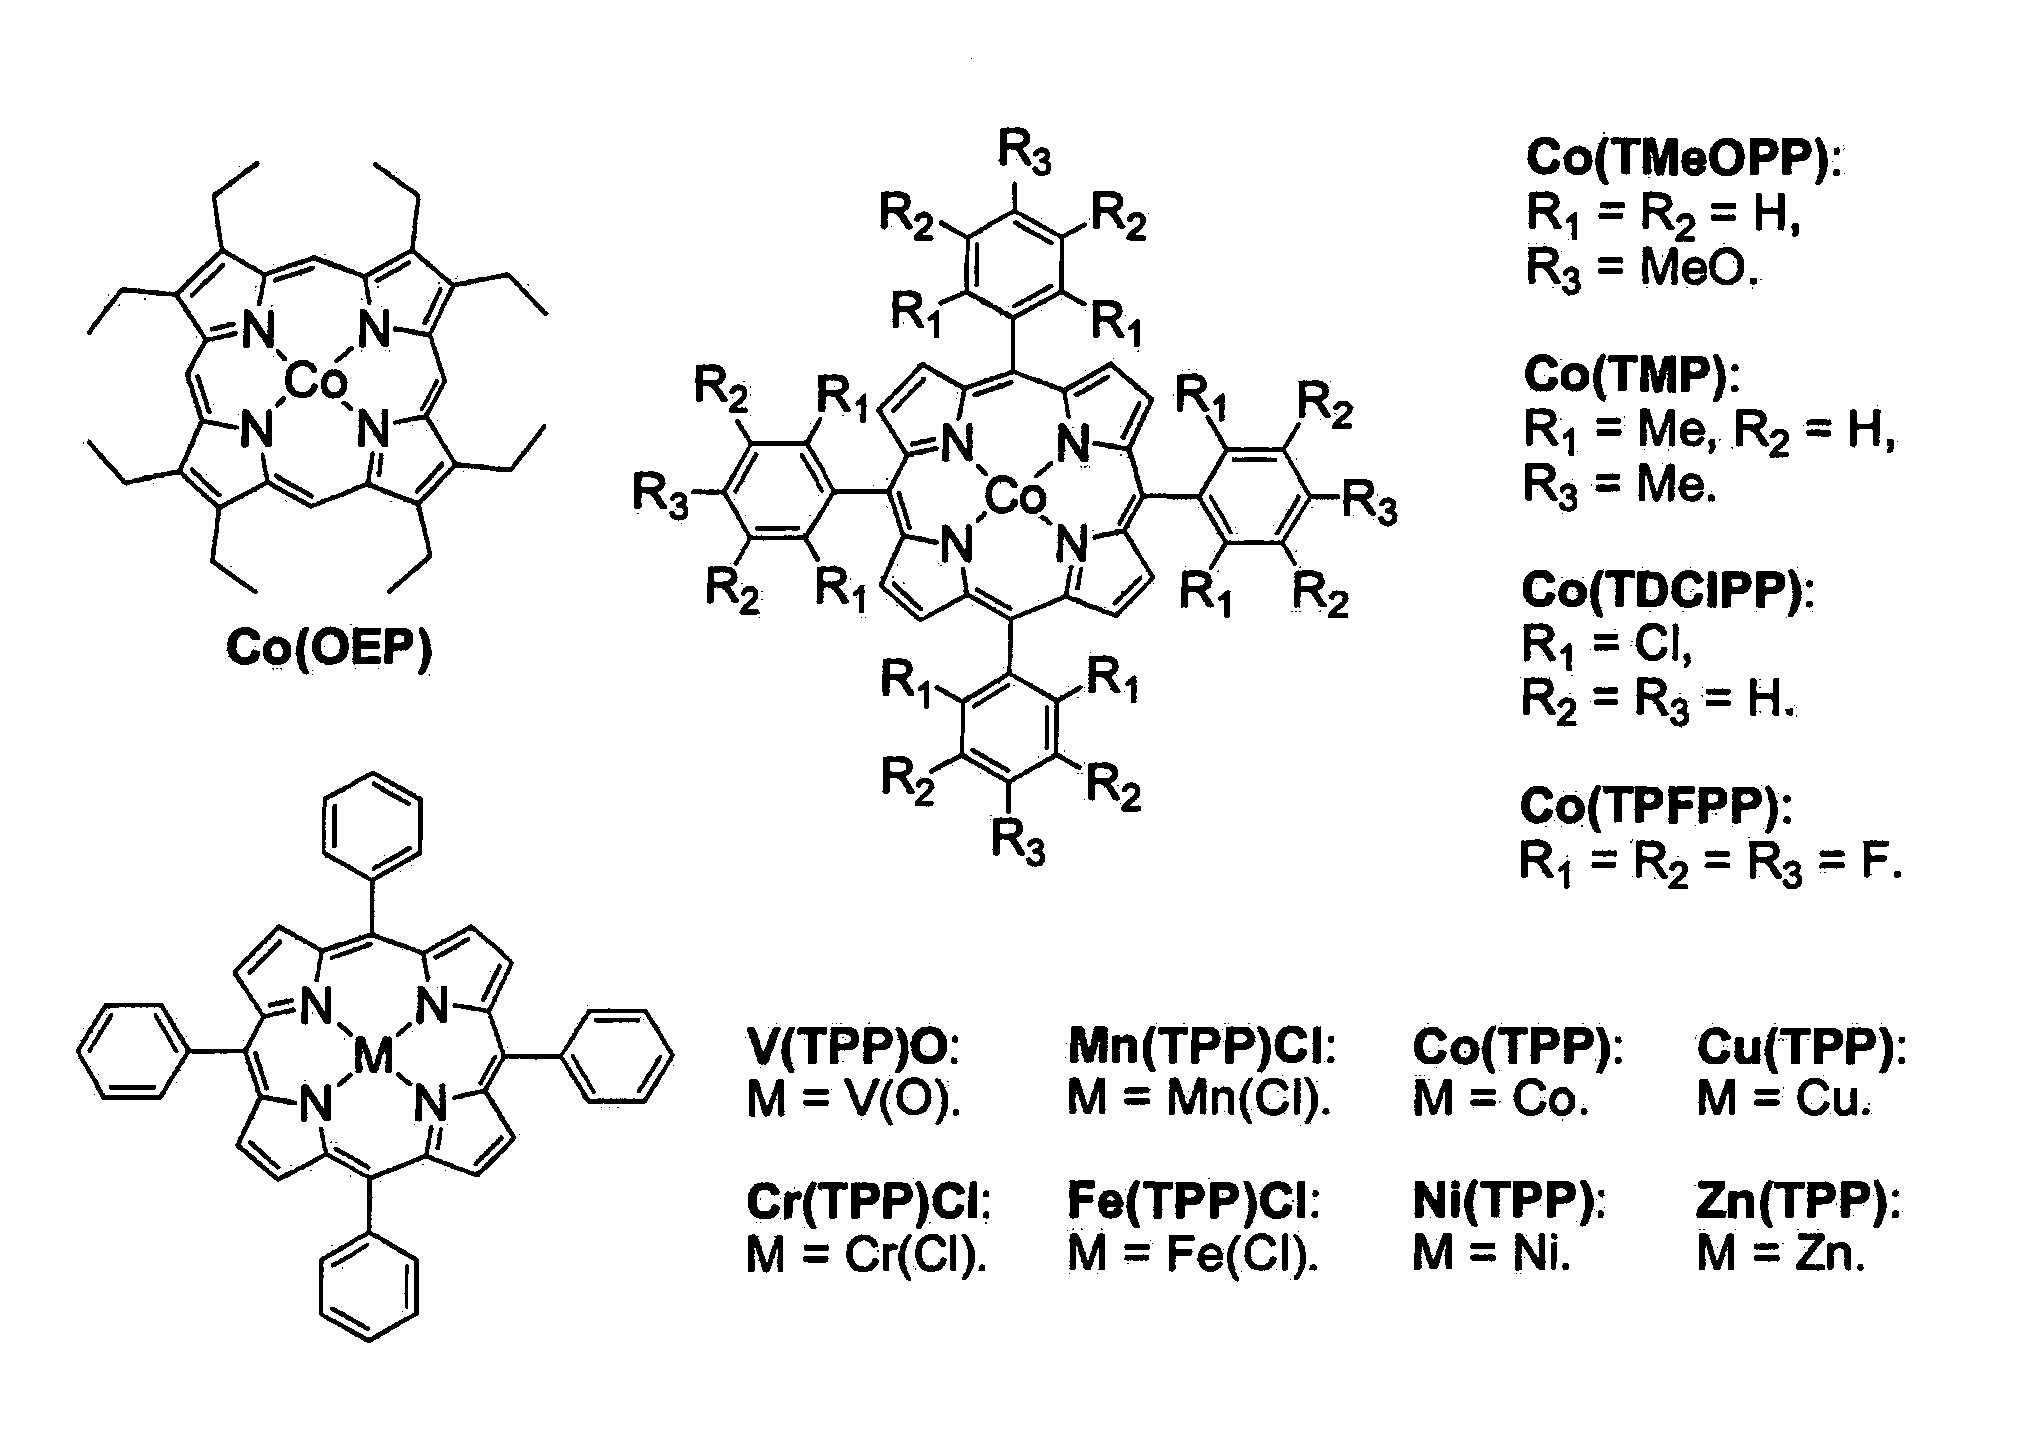 Intramolecular C-H amination with sulfonyl azides